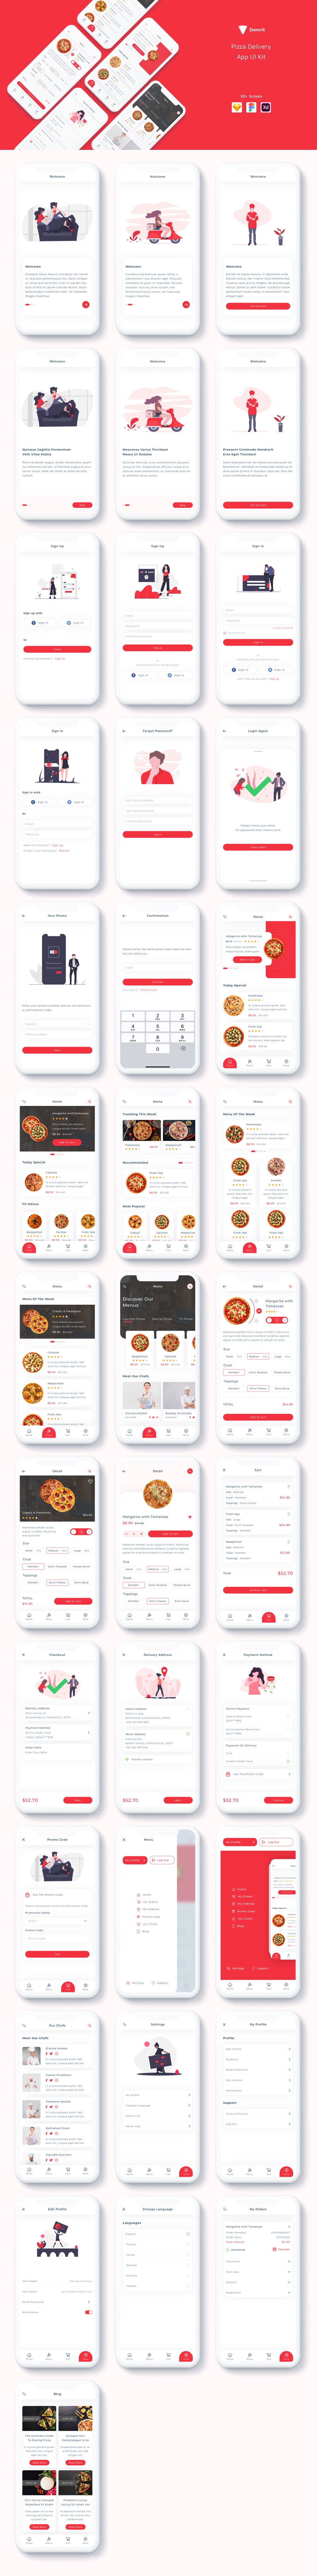 外卖披萨配送App UI Kit设计素材模板